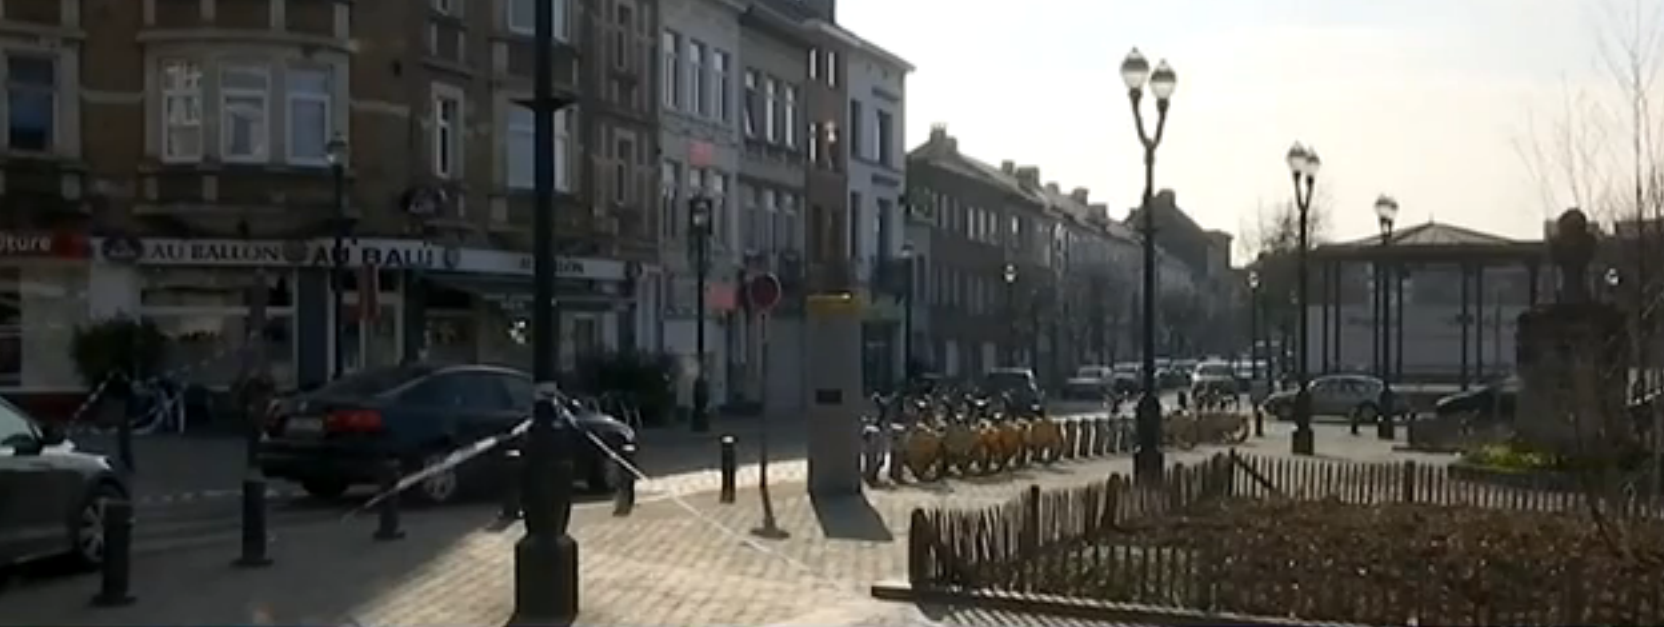 La rue belge dans laquelle l'un des auteurs des attentats de Paris a été abattu par la police. 